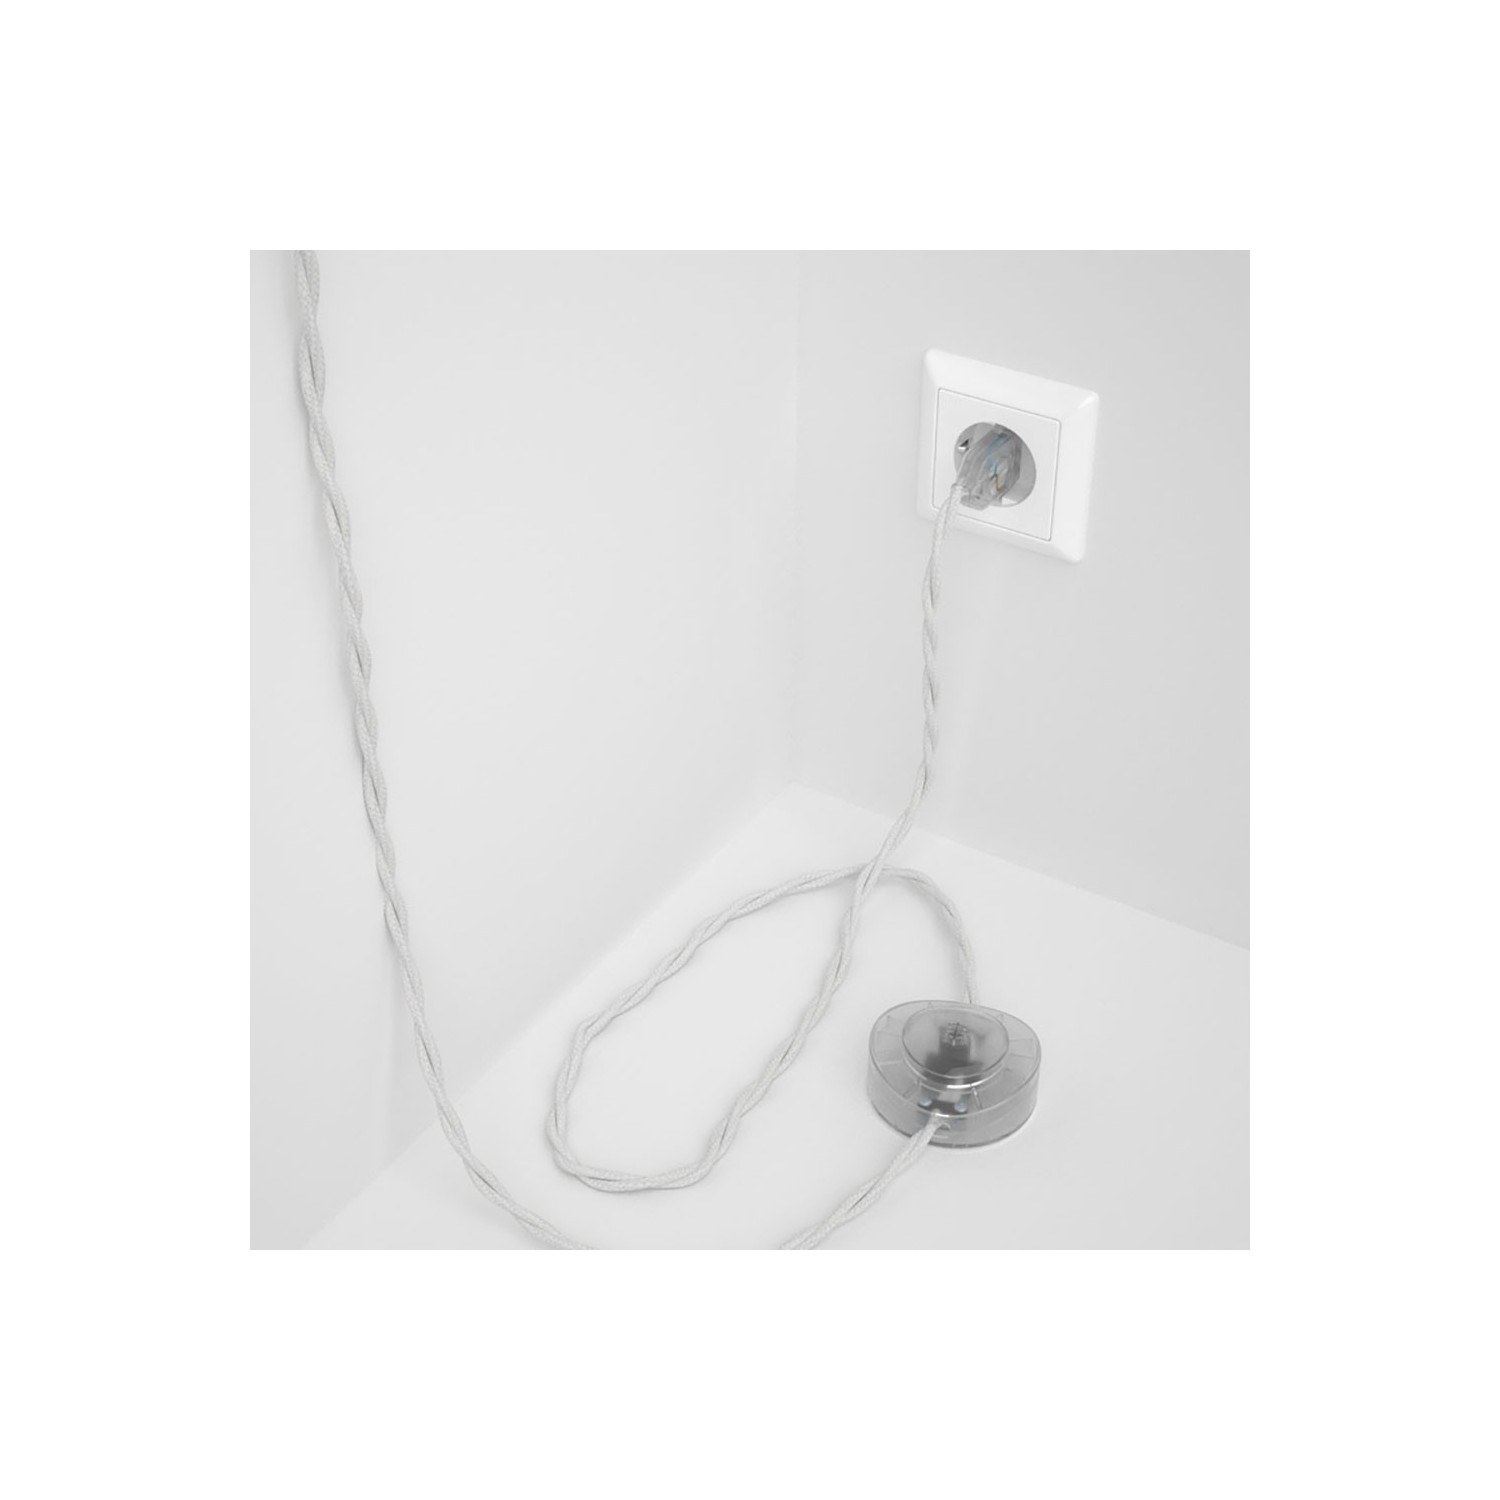 Stehleuchte Anschlussleitung TC01 Weiß Baumwolle 3 m. Wählen Sie aus drei Farben bei Schalter und Stecke.